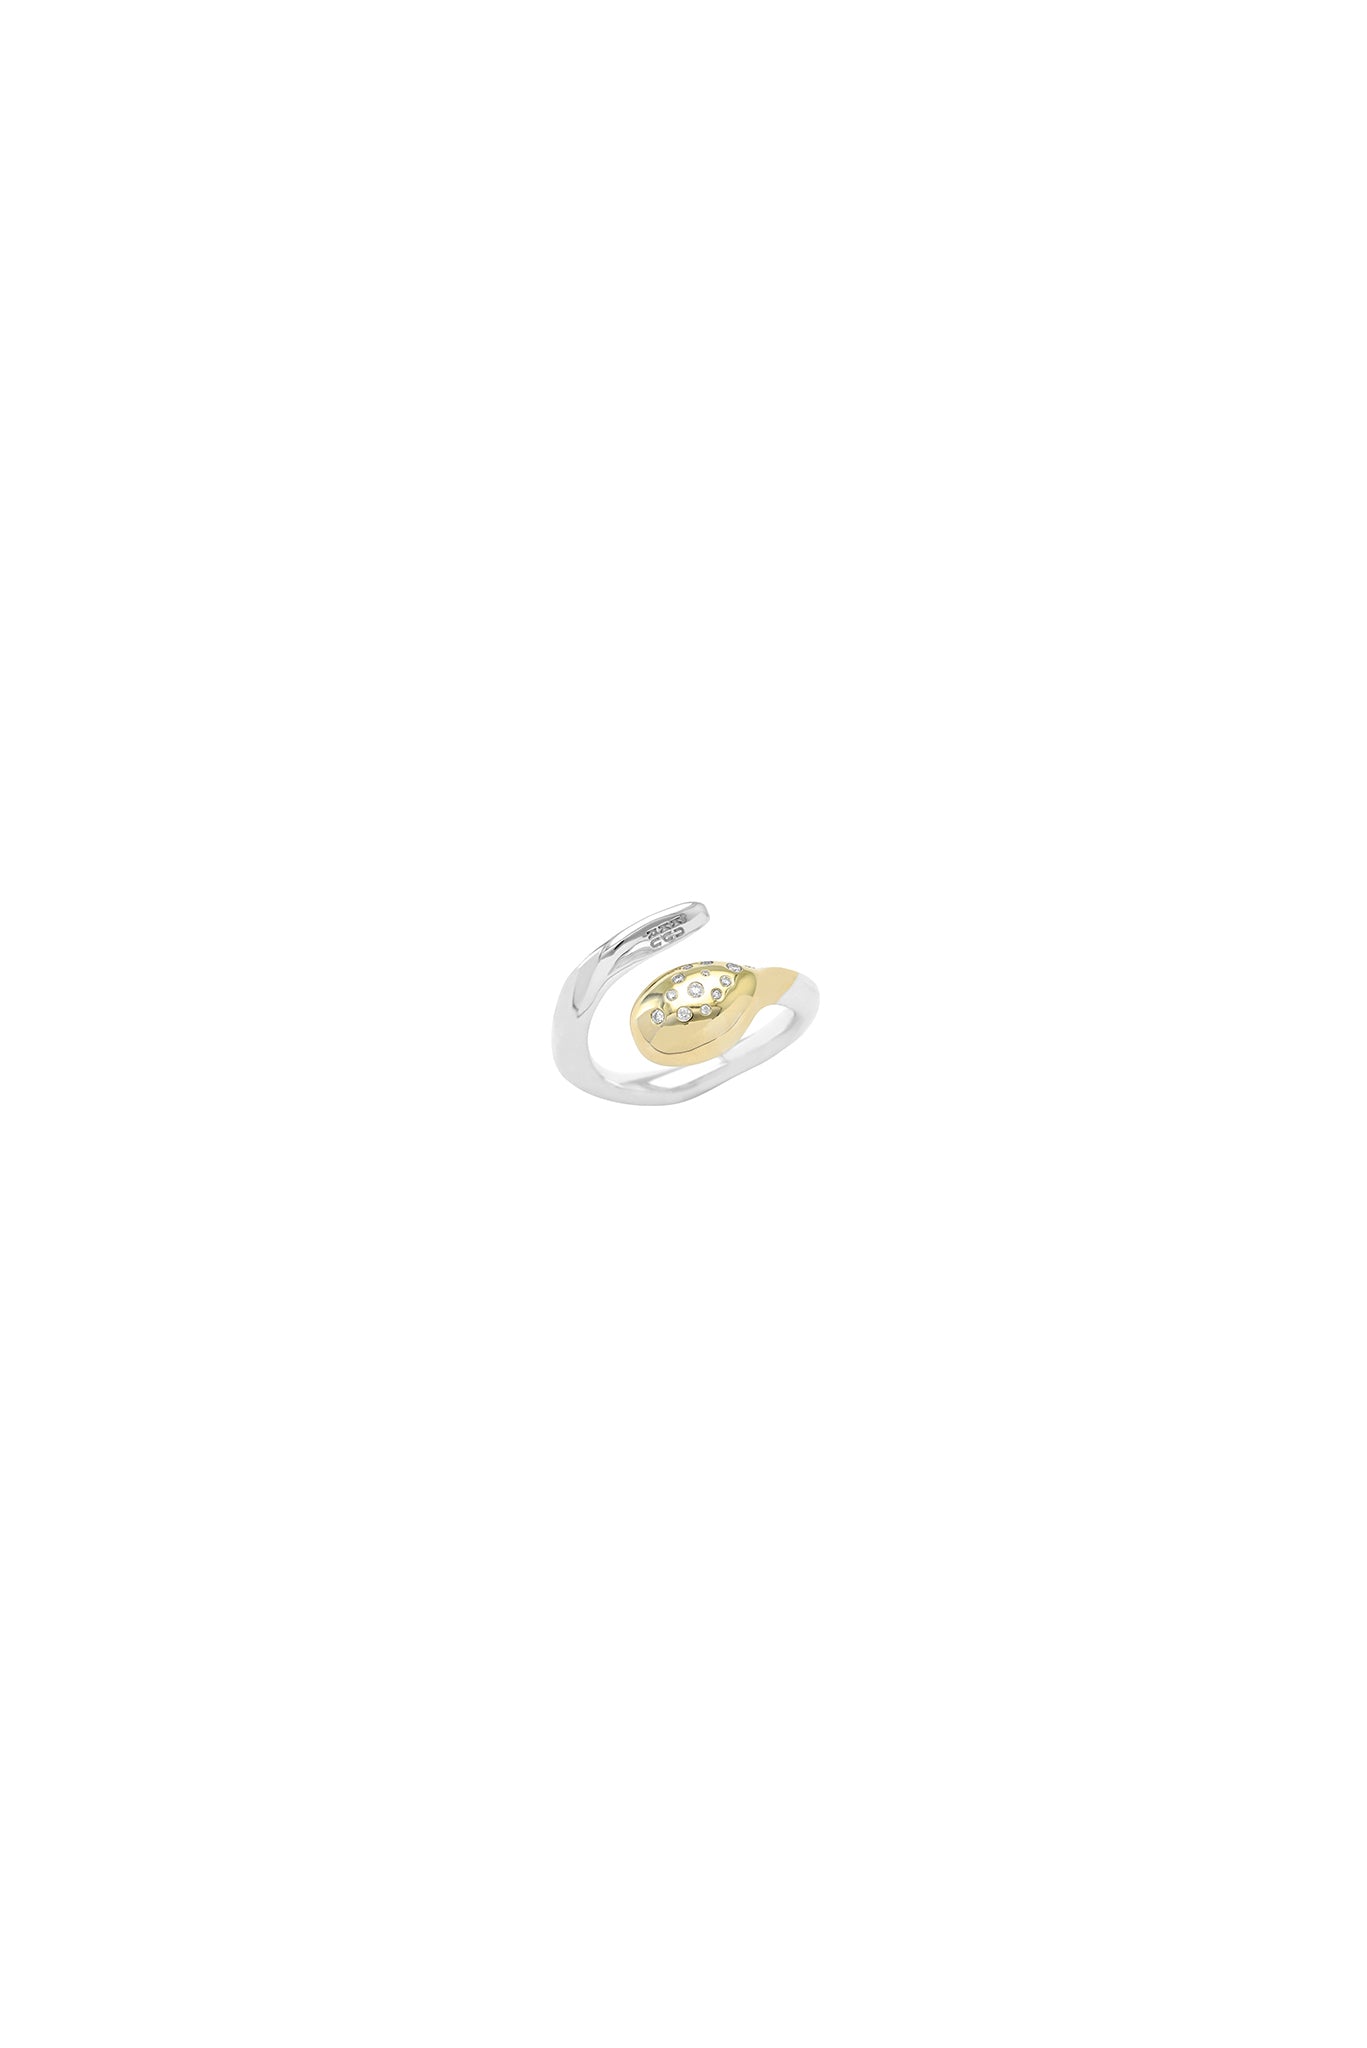 Δαχτυλίδι Sporos Κ18/925 με διαμάντια